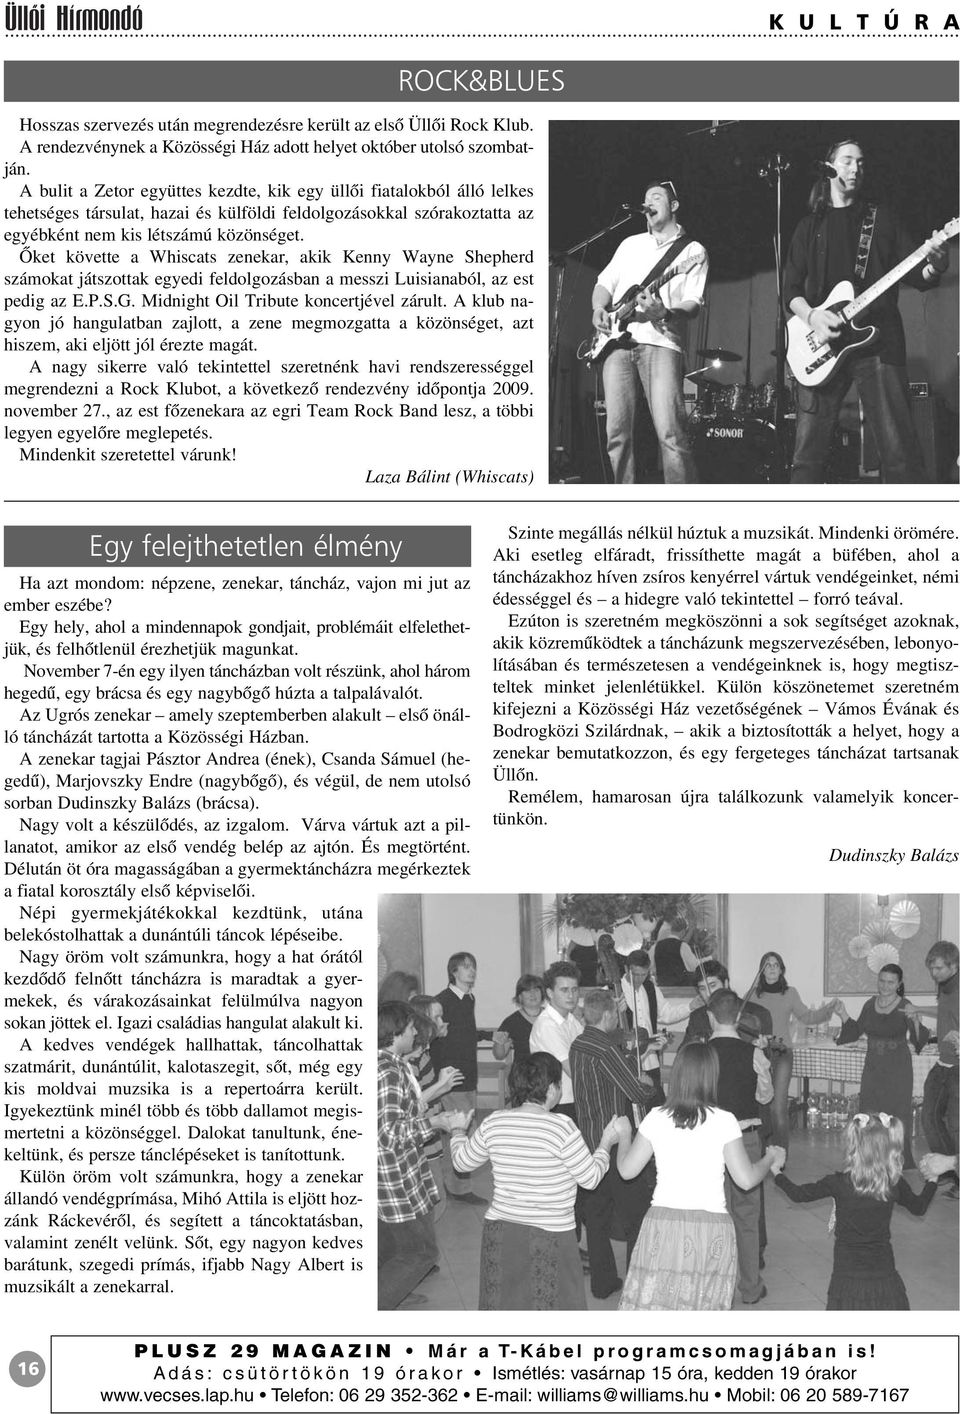 Õket követte a Whiscats zenekar, akik Kenny Wayne Shepherd számokat játszottak egyedi feldolgozásban a messzi Luisianaból, az est pedig az E.P.S.G. Midnight Oil Tribute koncertjével zárult.